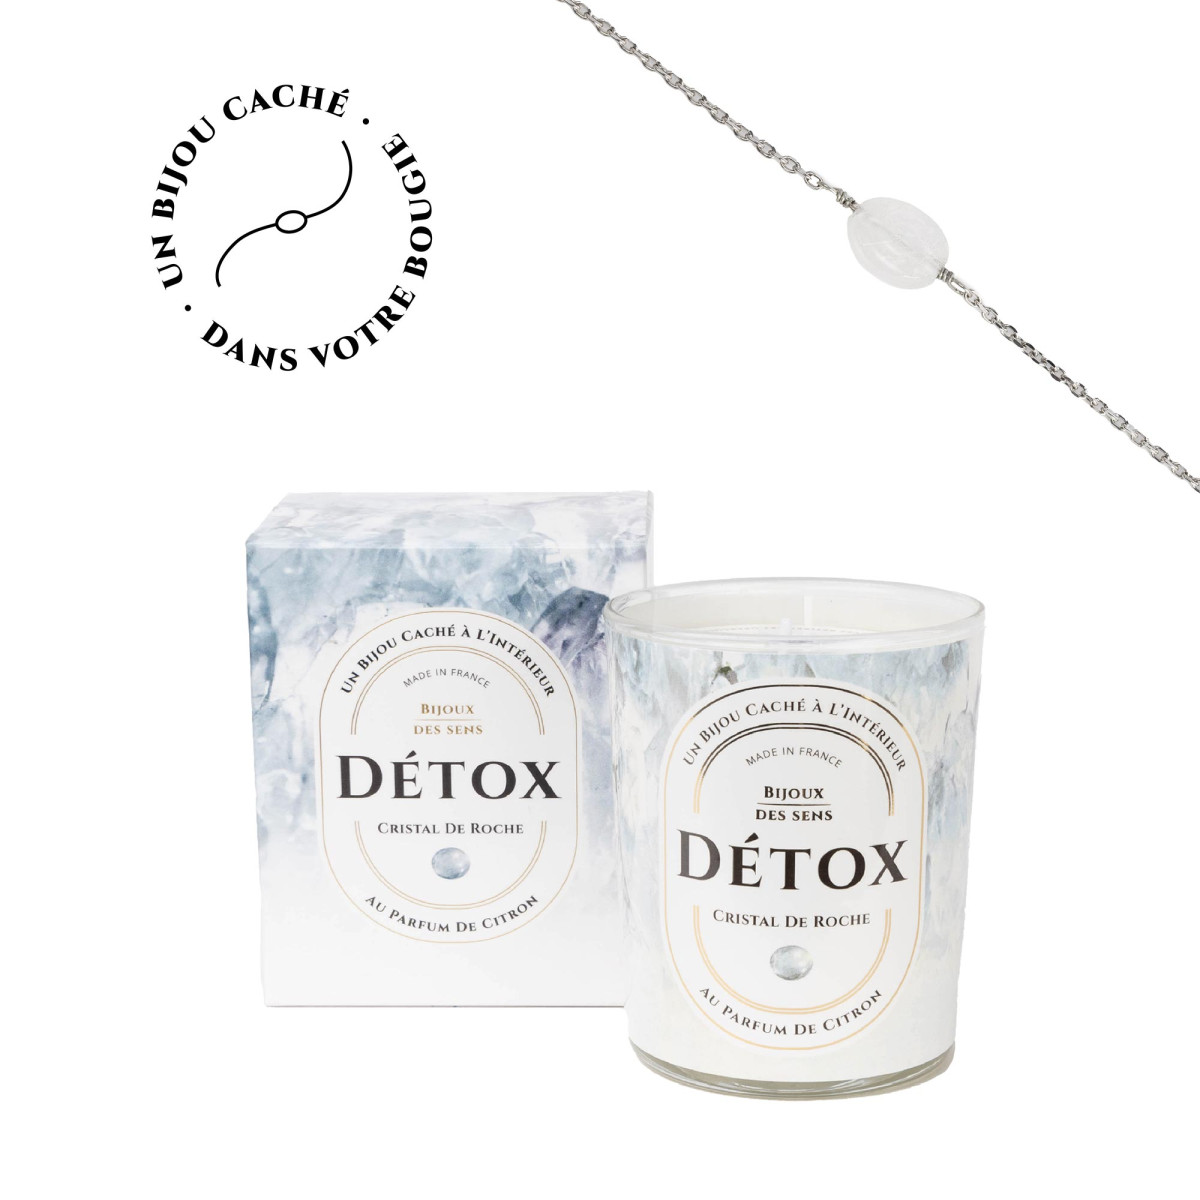 Detox - Bougie Fragrance Citron et Bracelet Argenté Crystal De Roche